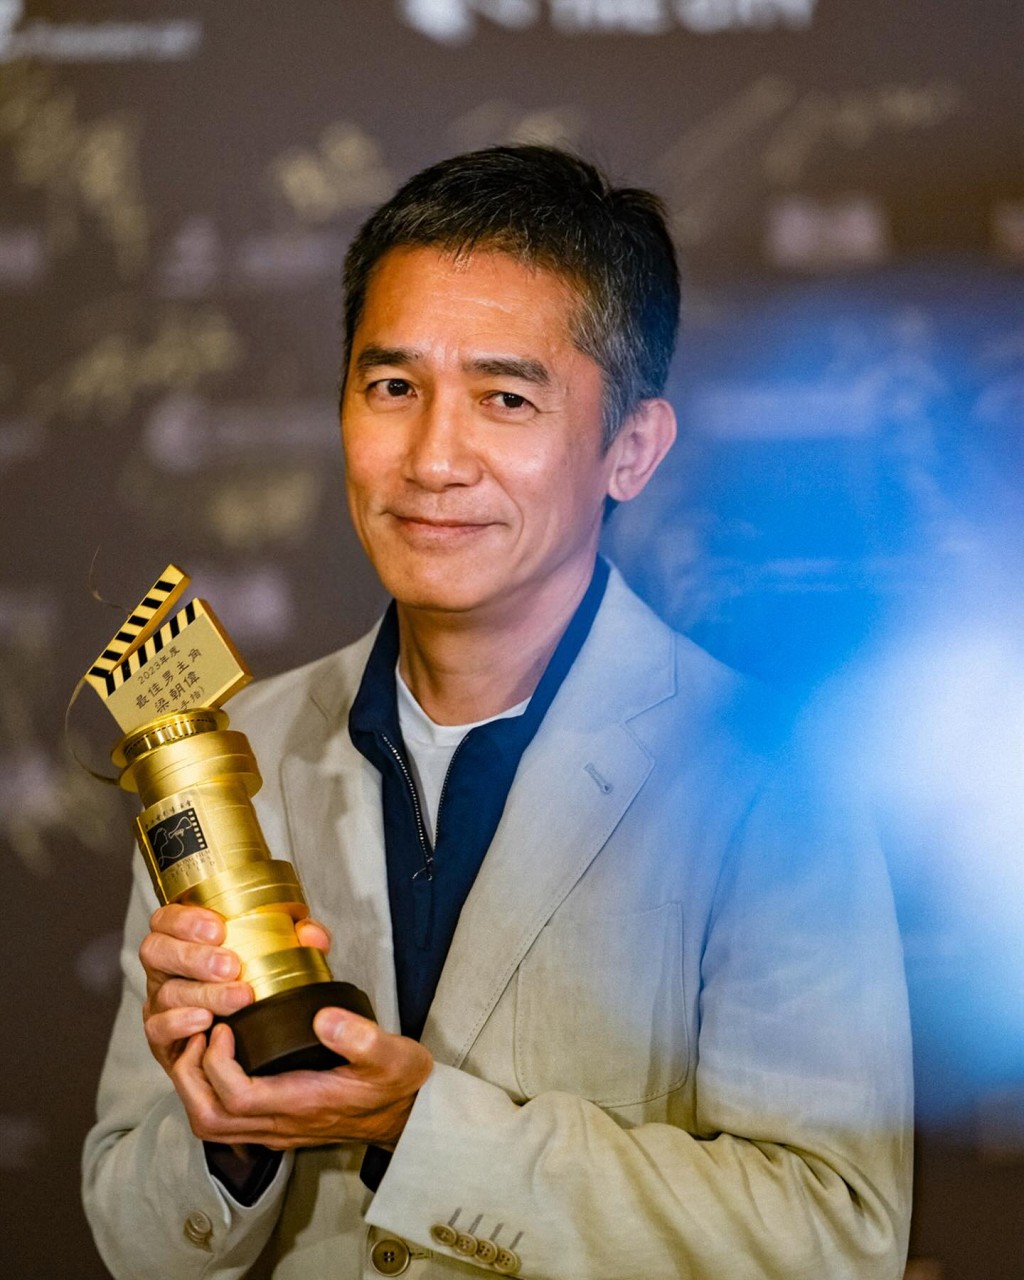 梁朝伟在导演会颁奖礼上凭《金手指》夺得“最佳男主角”。